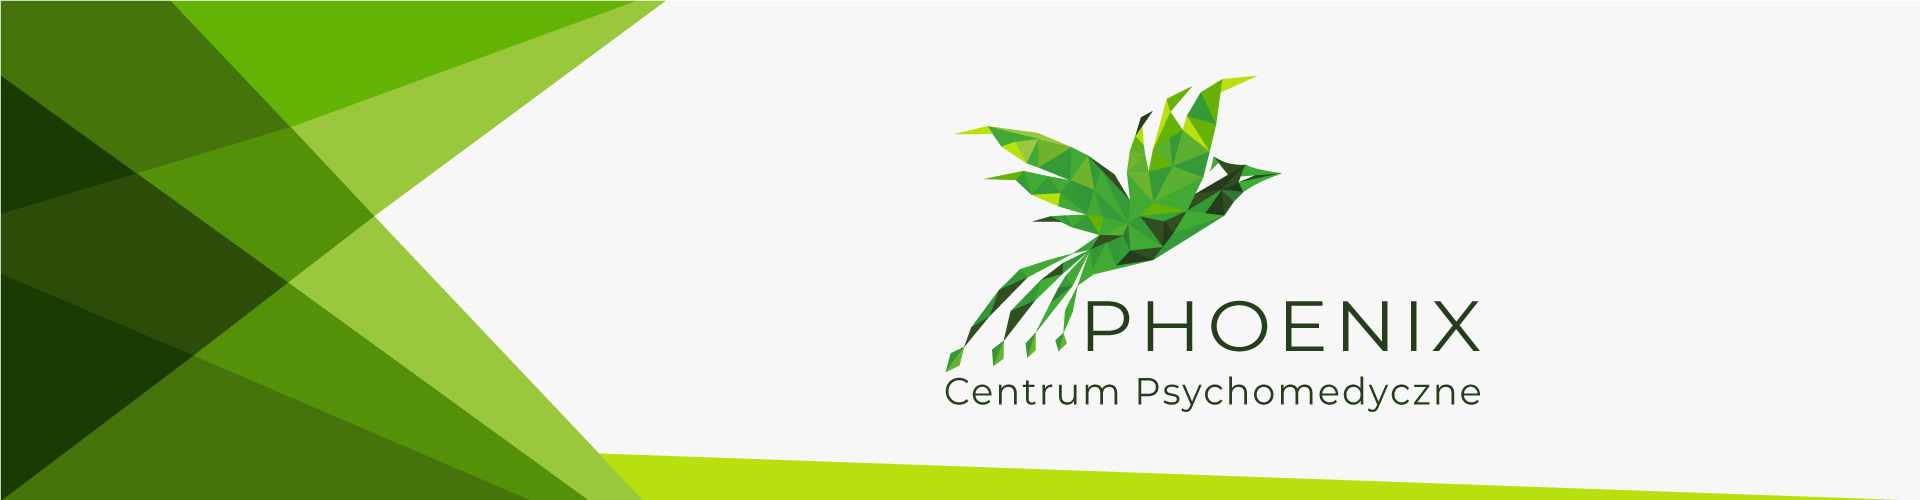 PHOENIX Centrum Psychomedyczne - metody leczenia